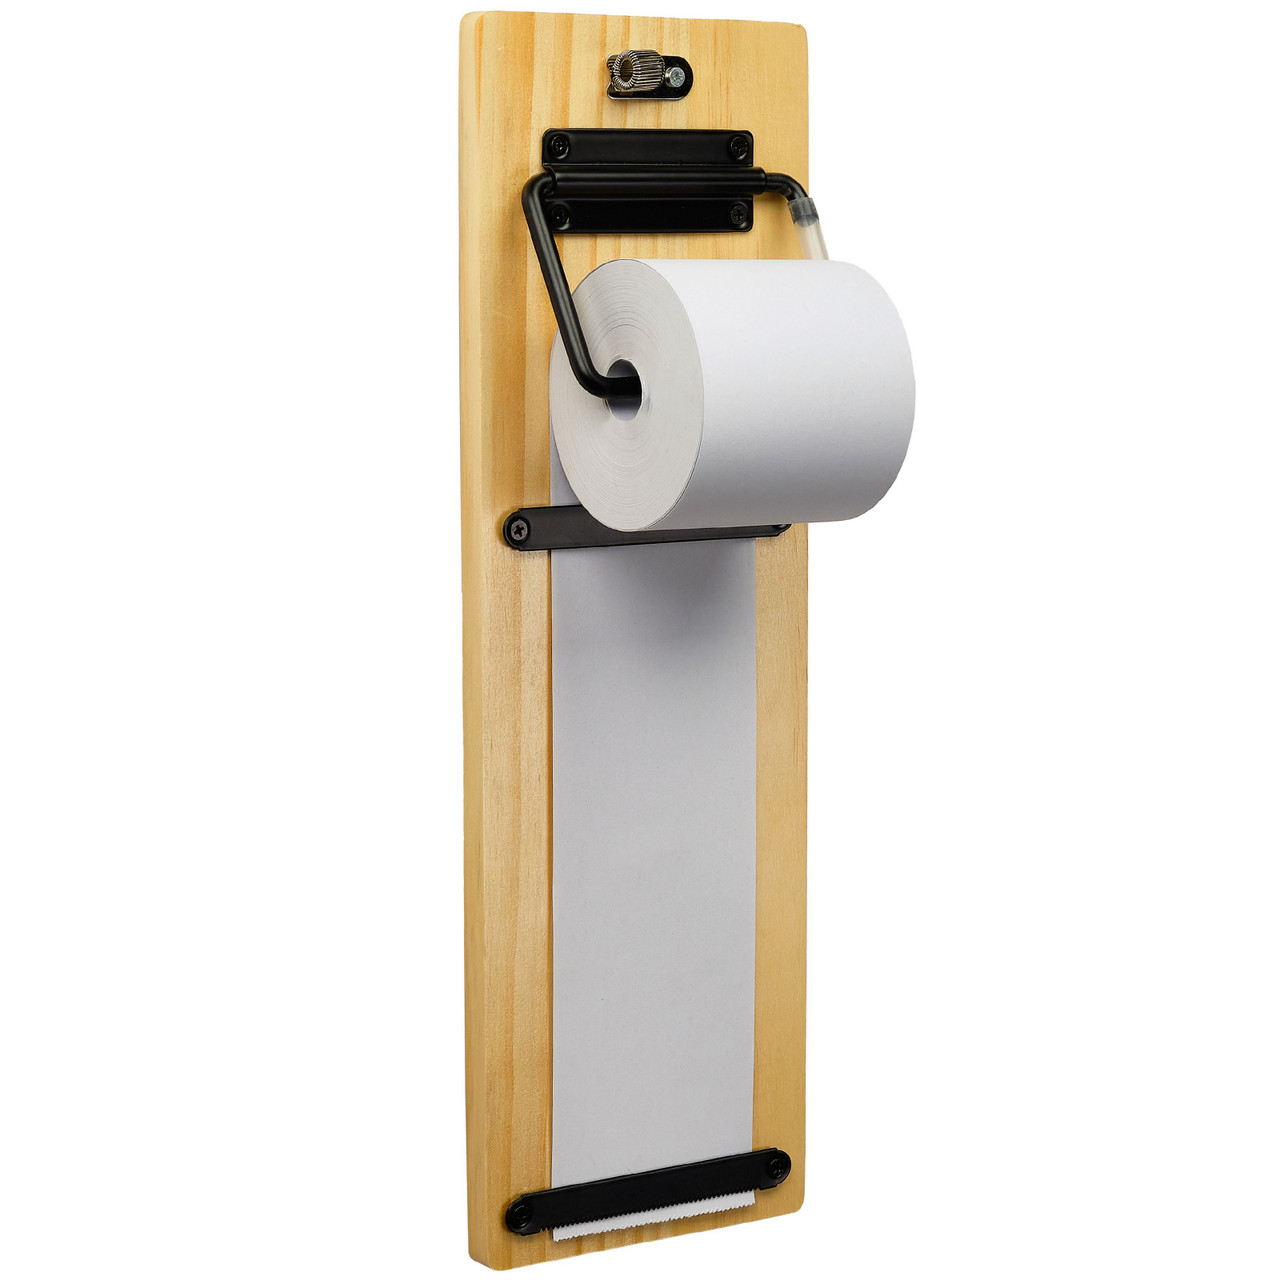 Wall Mounted Kraft Paper Dispenser & Cutter: with Kraft Paper Roll